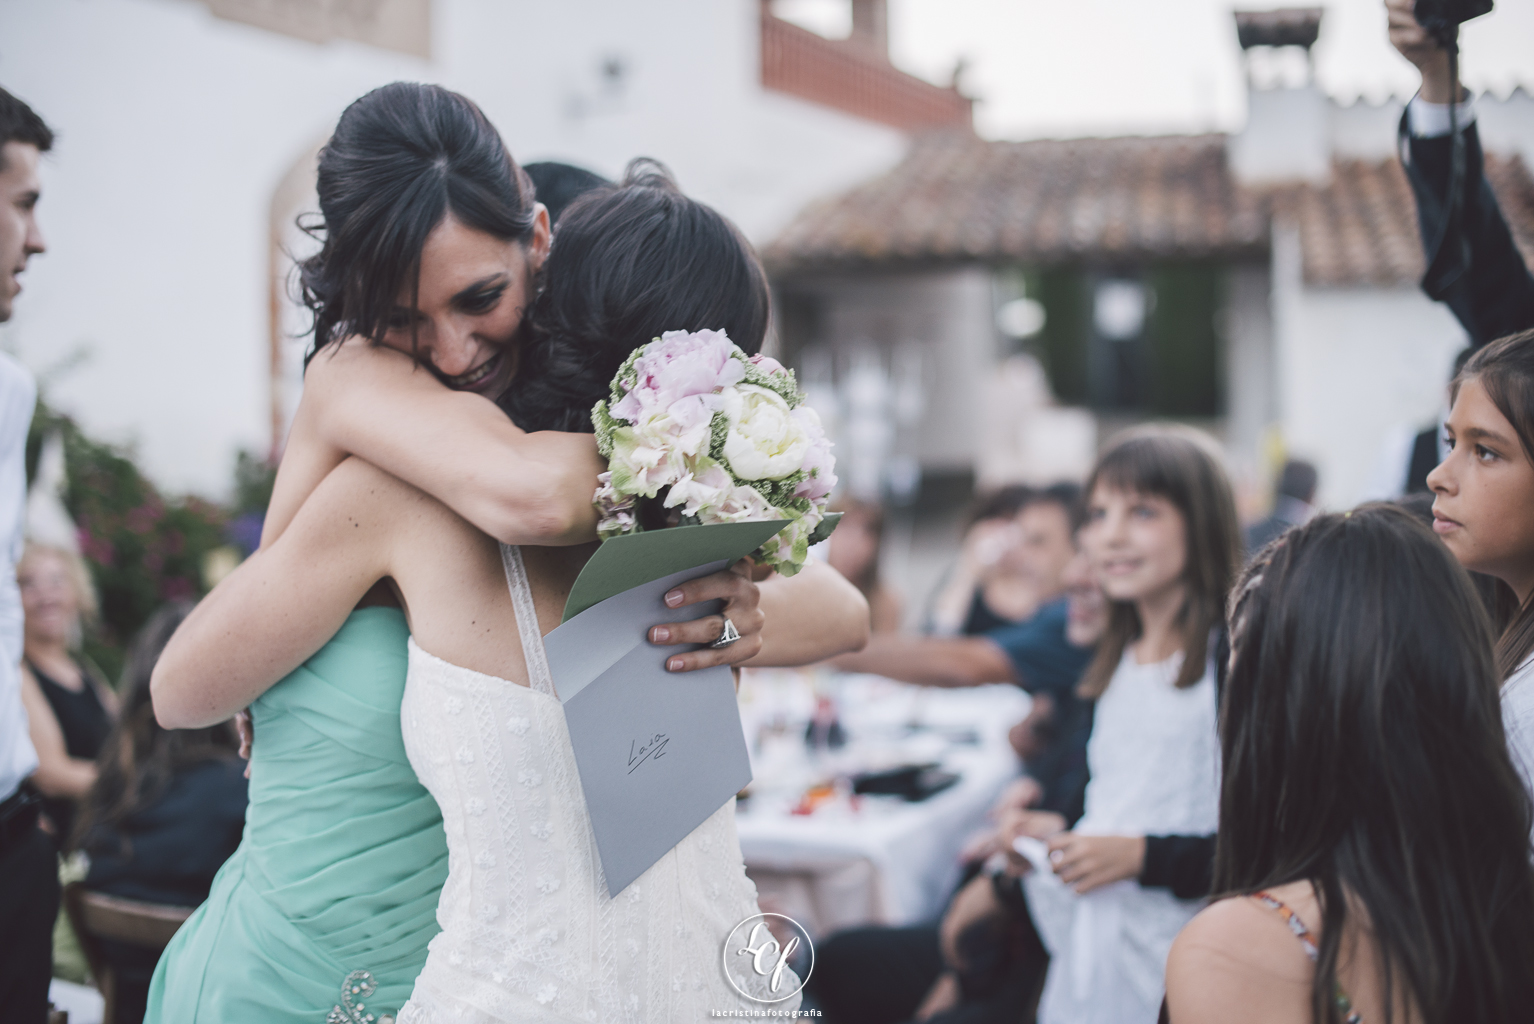 Fotógrafo de boda Barcelona :: Fotografía de boda en Barcelona :: Boda en una masía :: Fotografía de boda natural